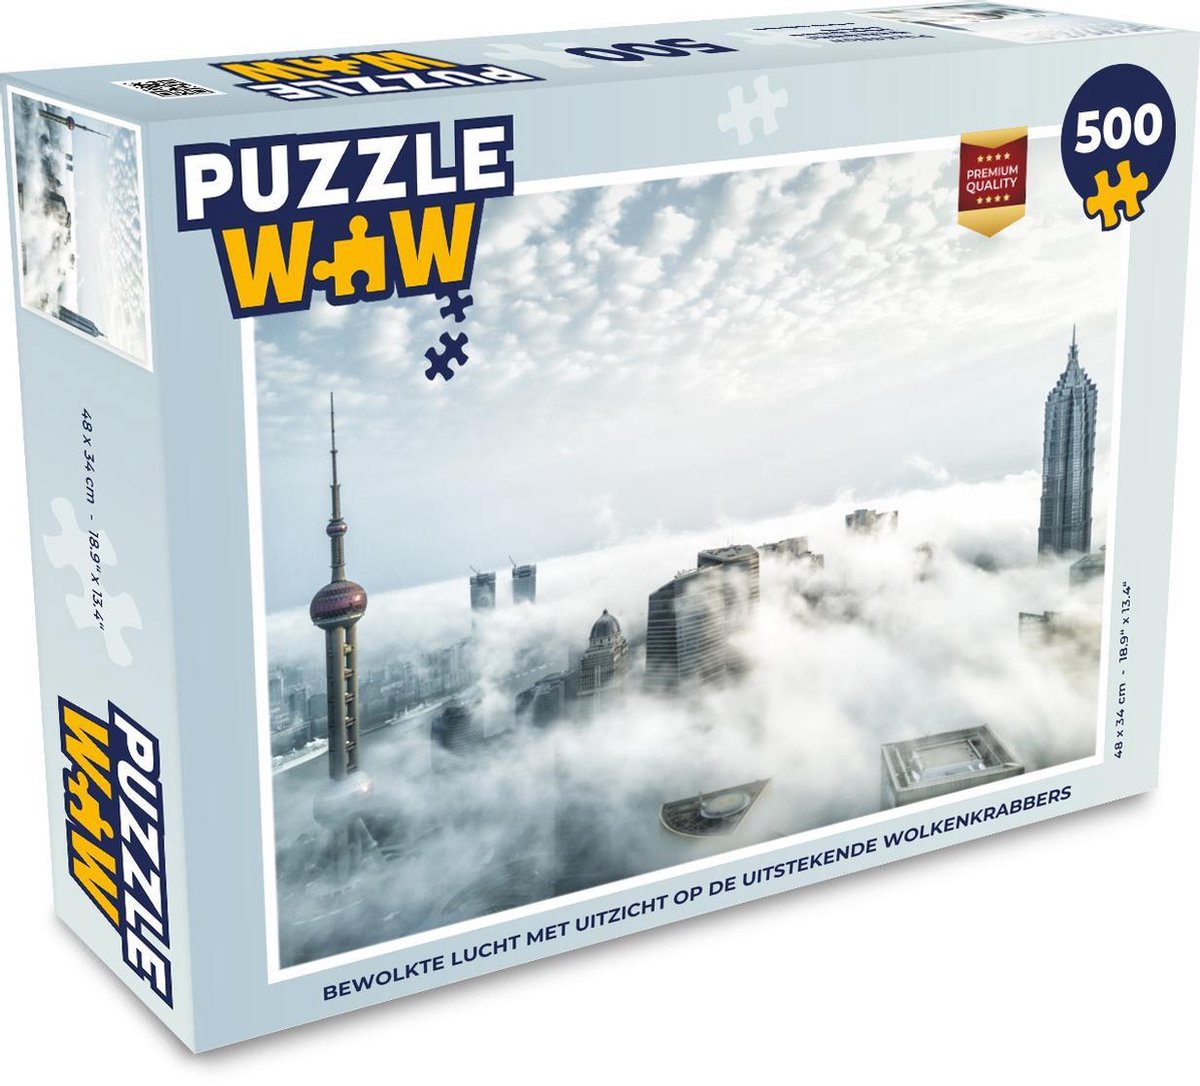 Afbeelding van product Puzzel 500 stukjes Bewolkte hemel - Bewolkte lucht met uitzicht op de uitstekende wolkenkrabbers - PuzzleWow heeft +100000 puzzels